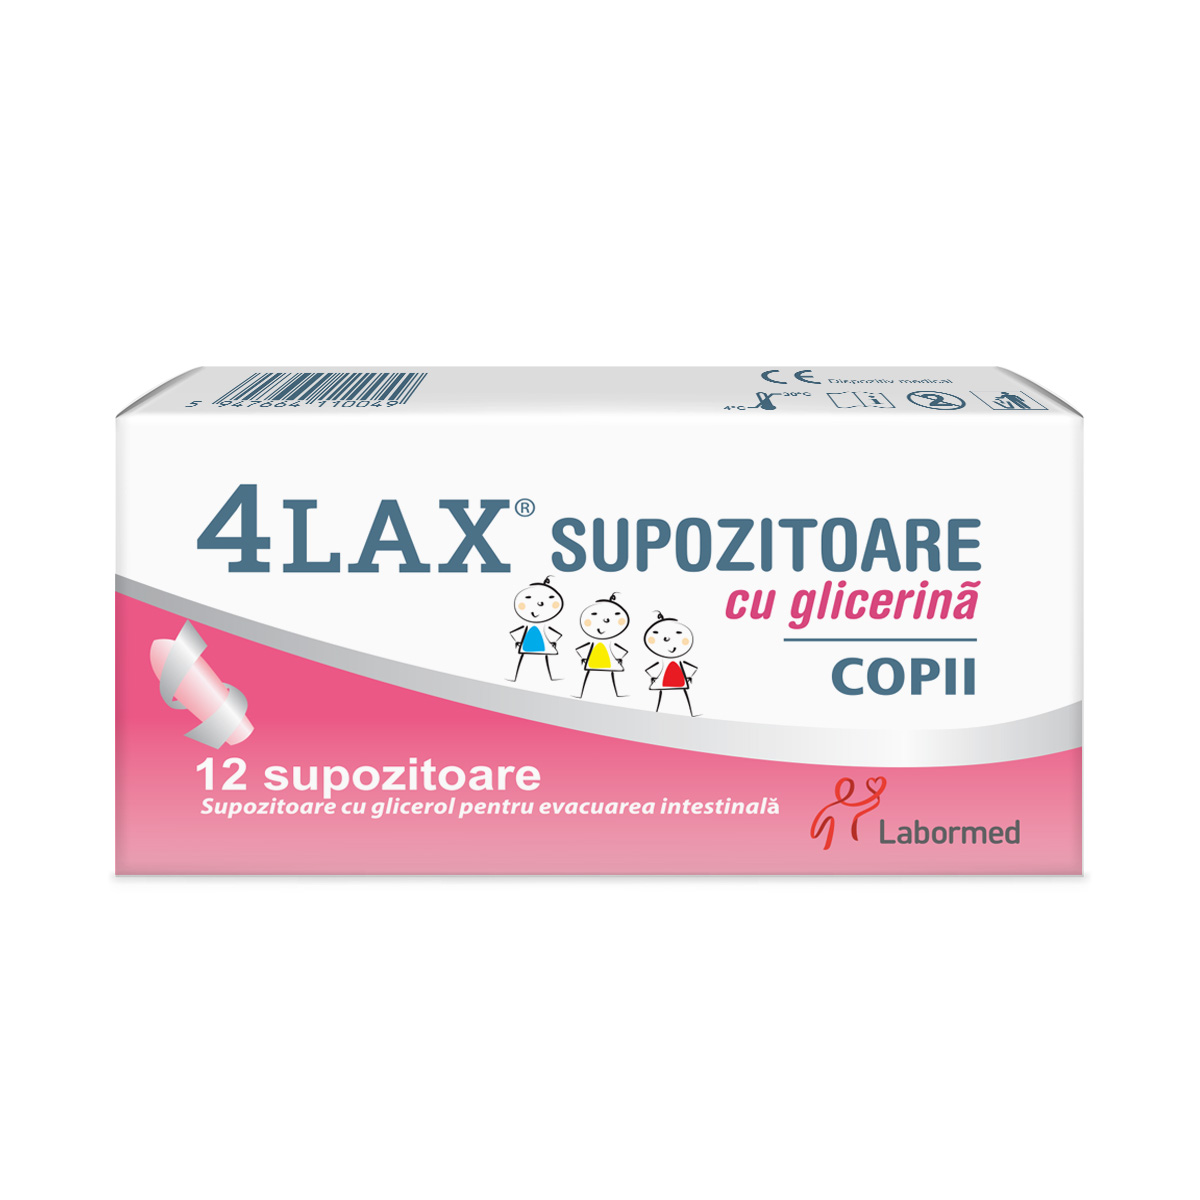 4Lax Supozitoare cu glicerina pentru copii, 12 bucati, Labormed